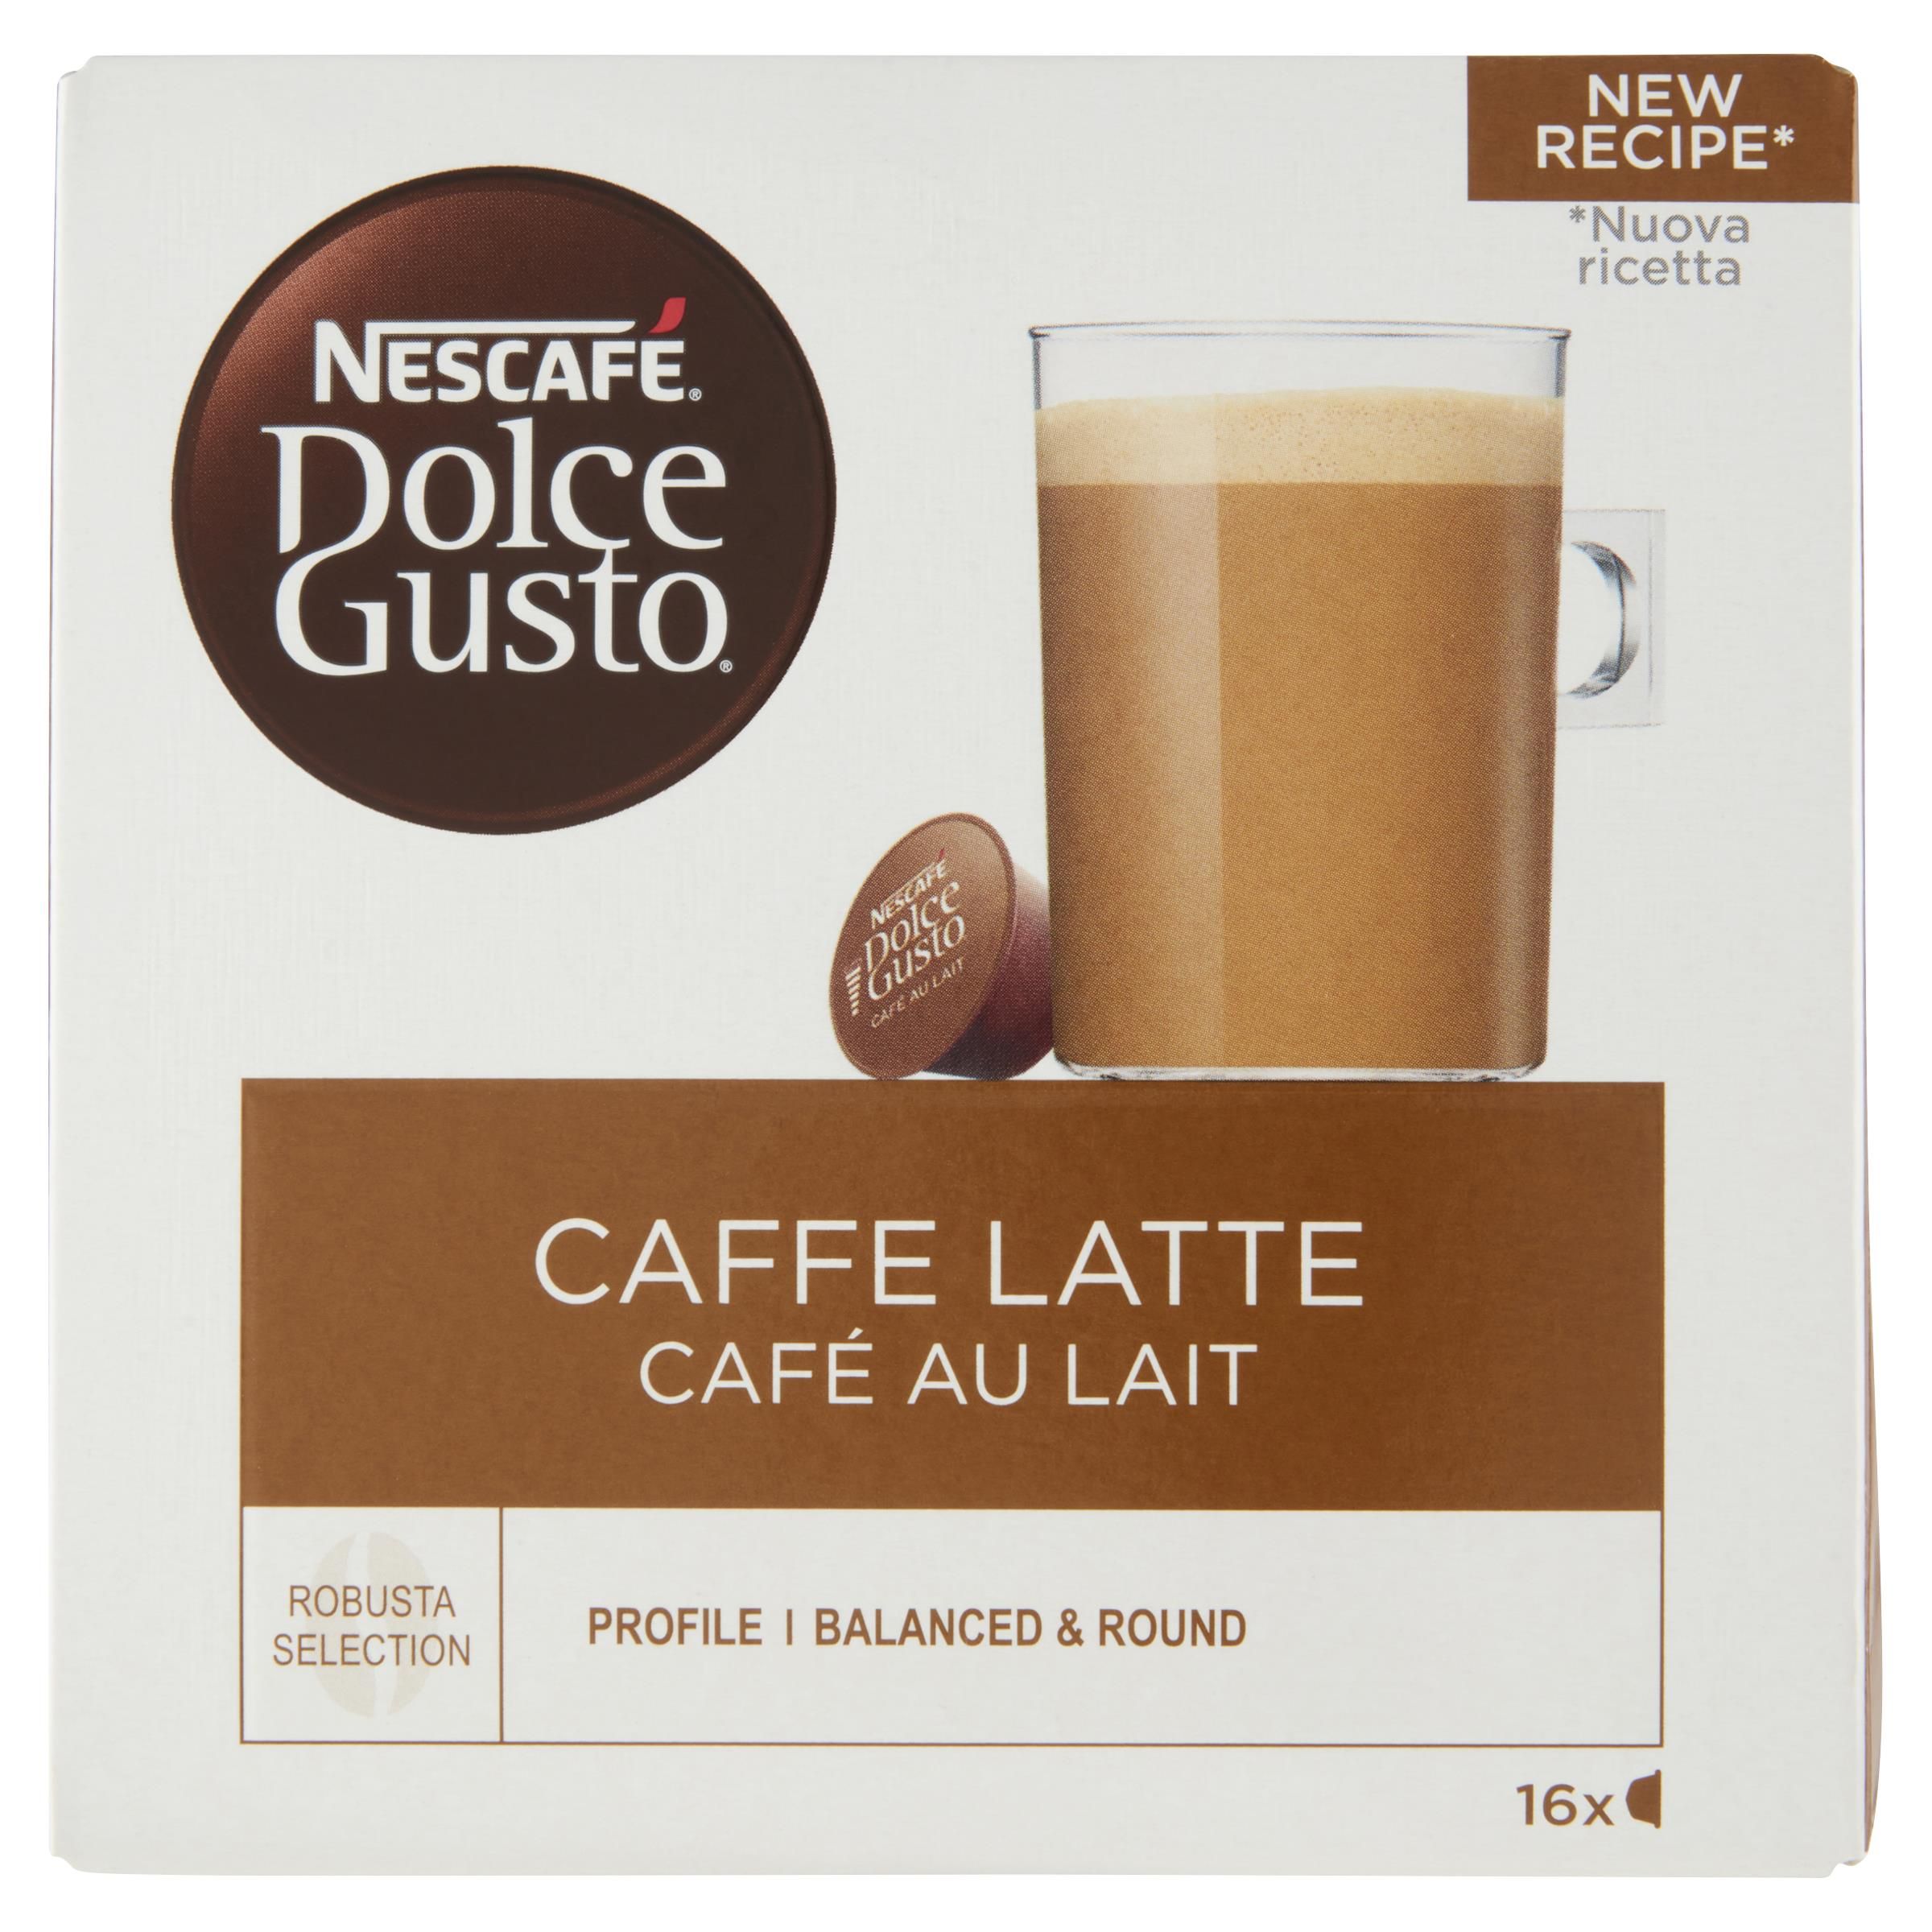 Nescafe Dolce Gusto Caffe Latte Confezione 16 Capsule